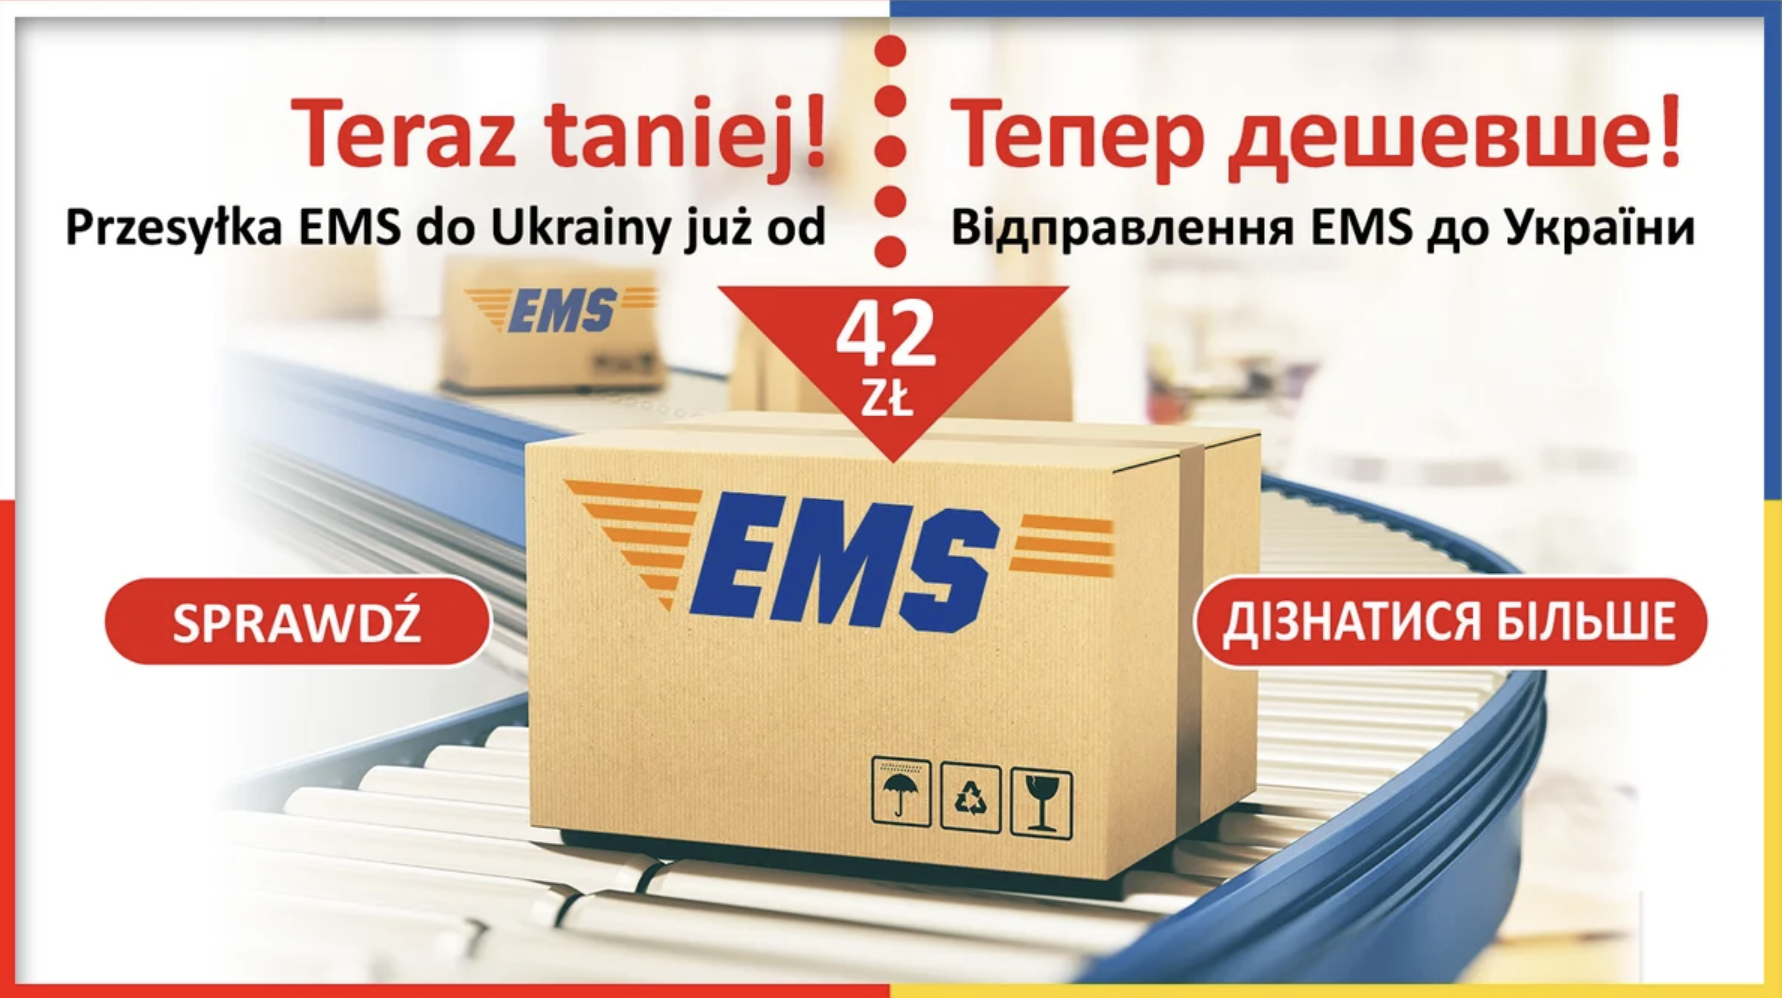 Korzystniejsze ceny przesyłek EMS pomiędzy Polską a Ukrainą